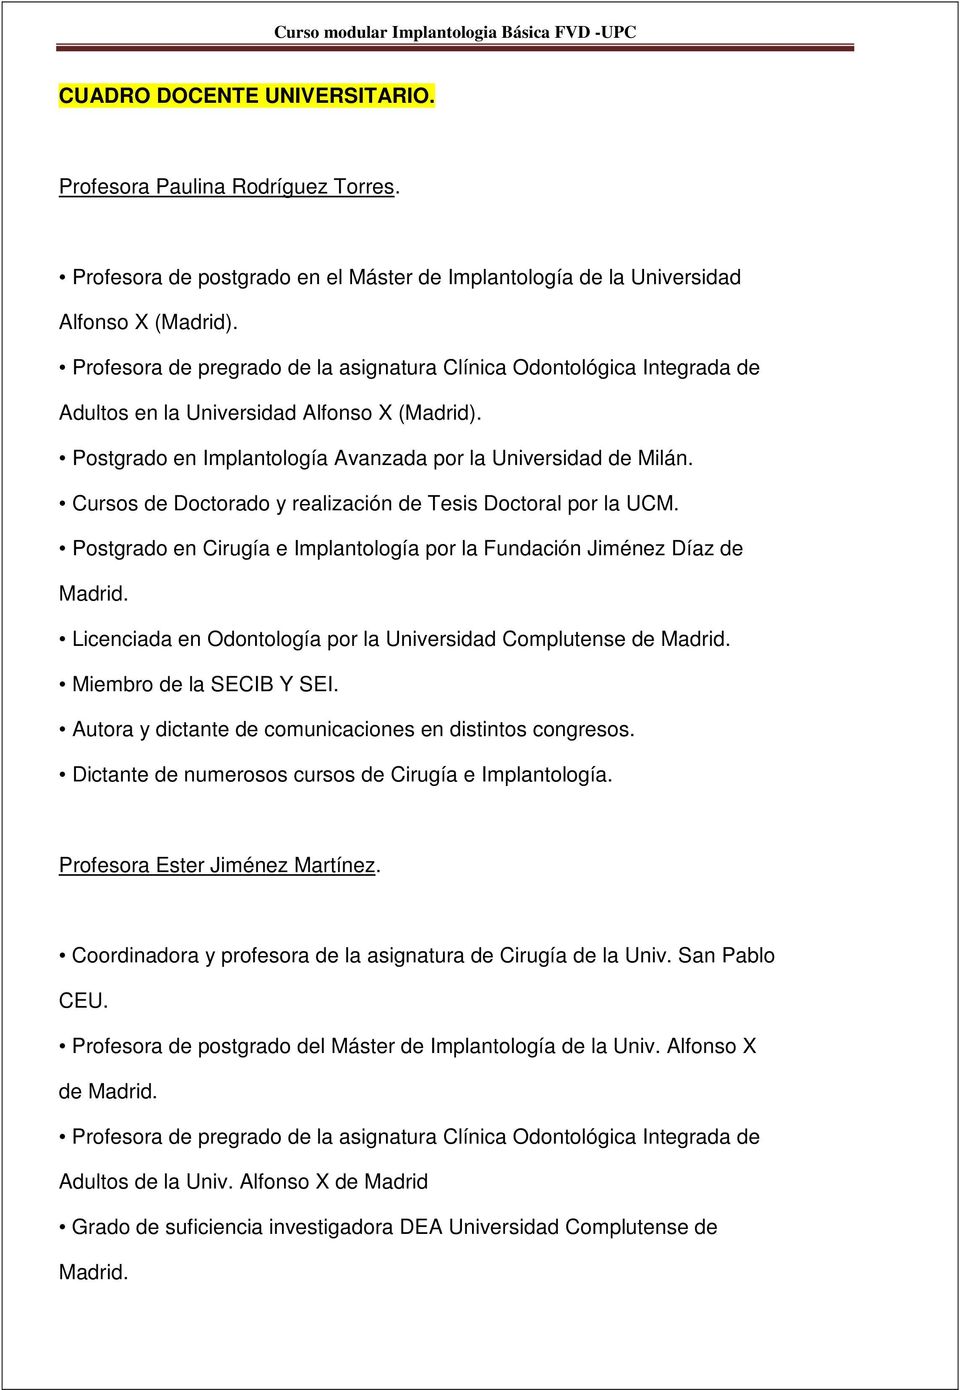 Cursos de Doctorado y realización de Tesis Doctoral por la UCM. Postgrado en Cirugía e Implantología por la Fundación Jiménez Díaz de Madrid.